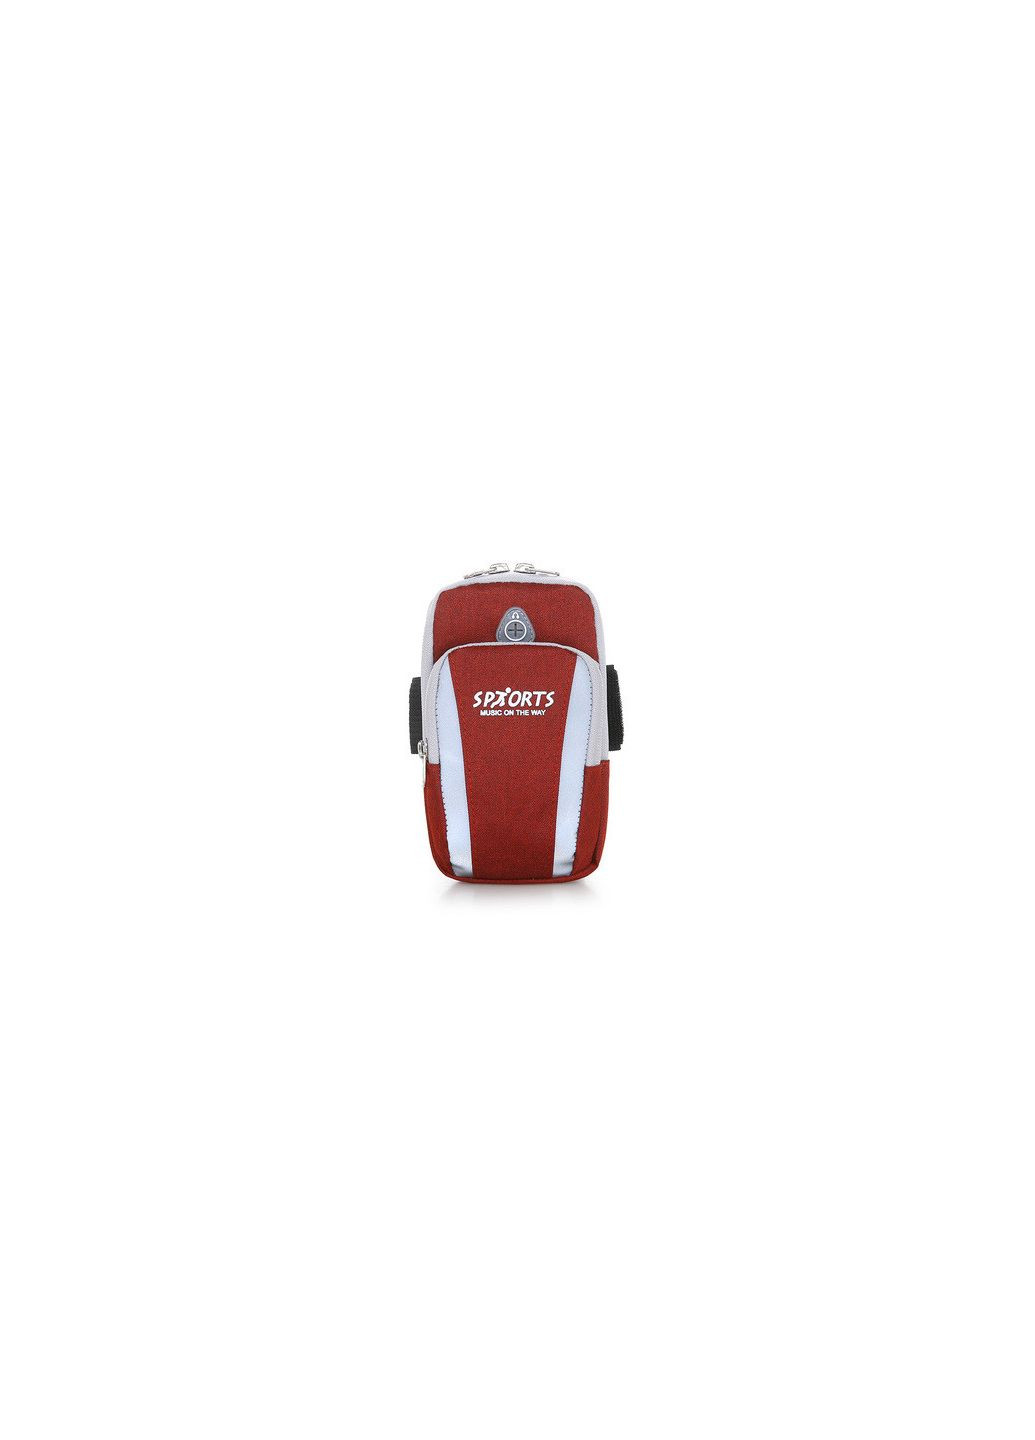 Красная сумка для бега Sports, сумка чехол на руку КиП (290683347)